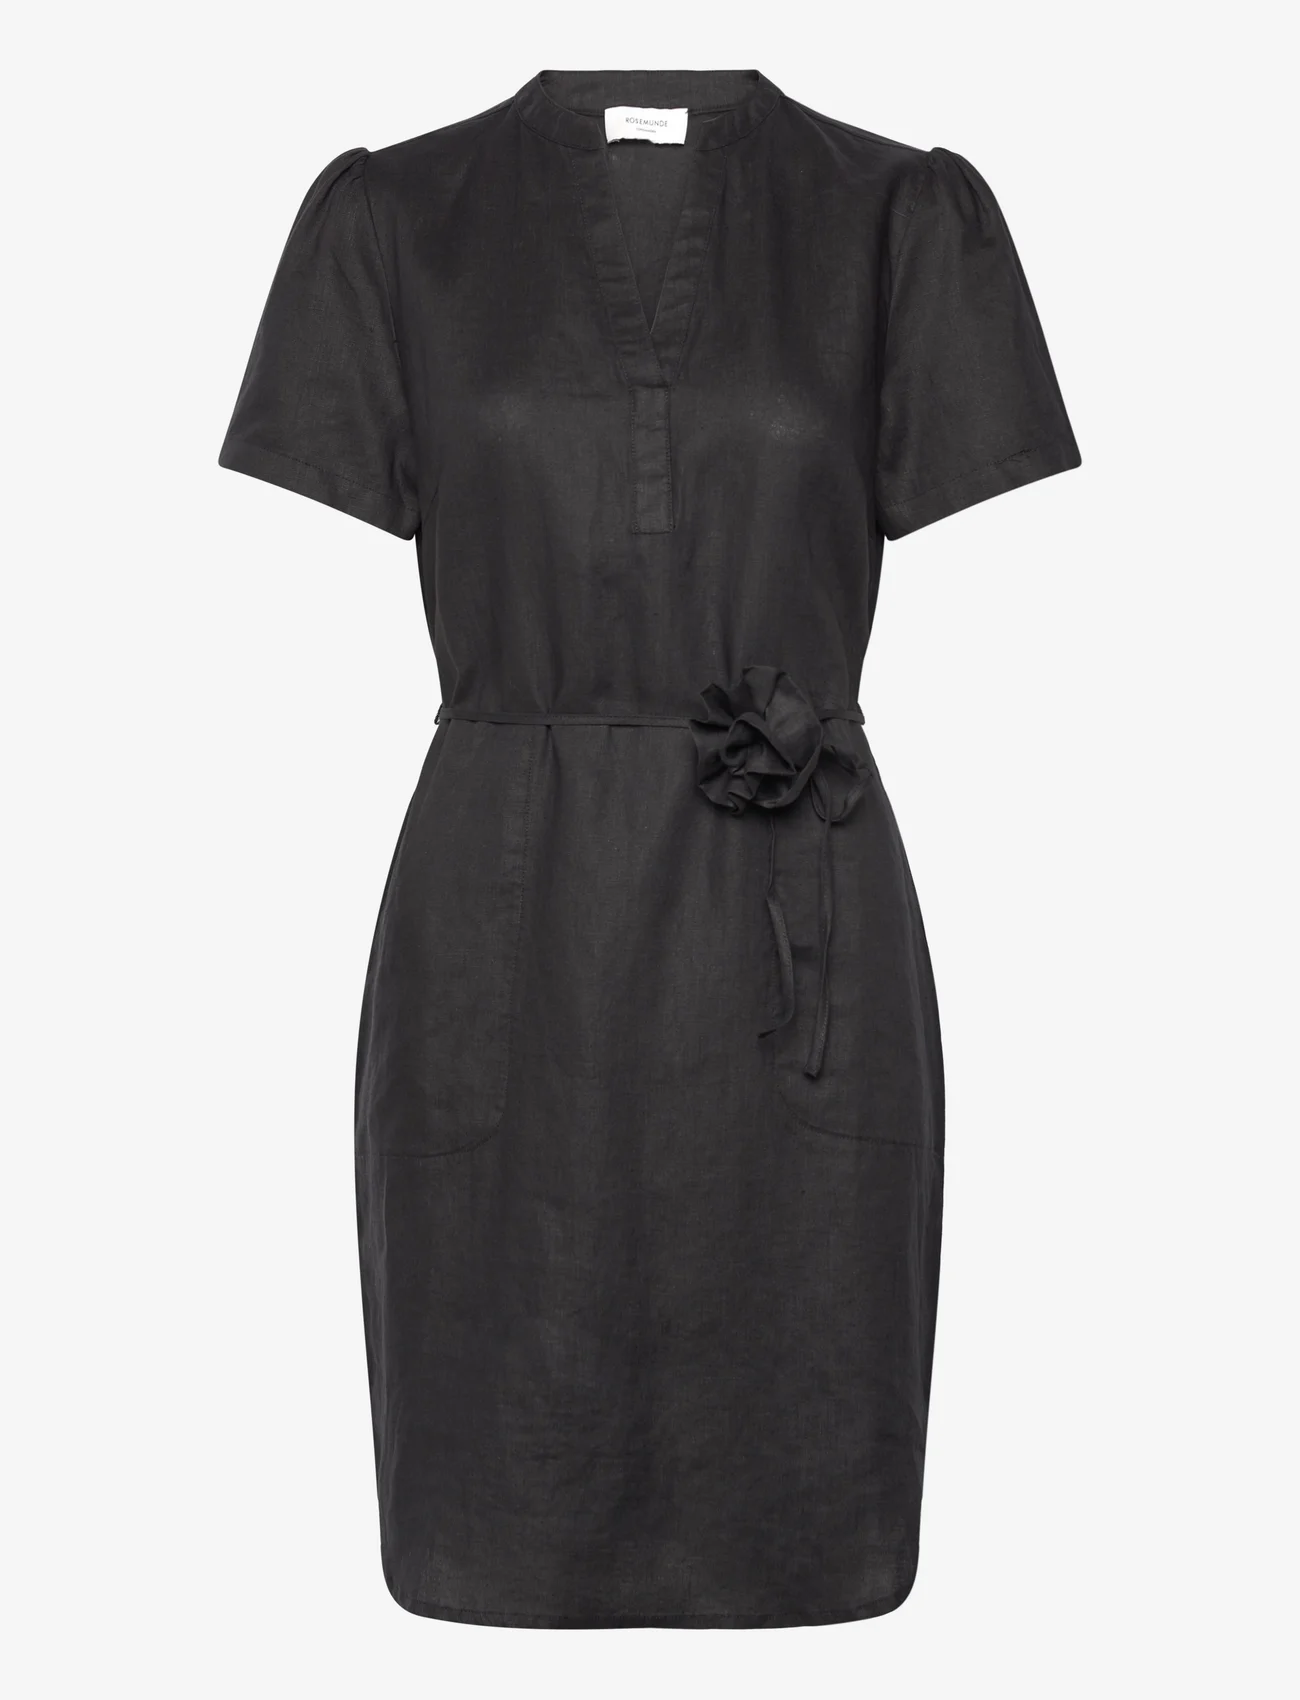 Rosemunde - Linen dress - summer dresses - black - 0